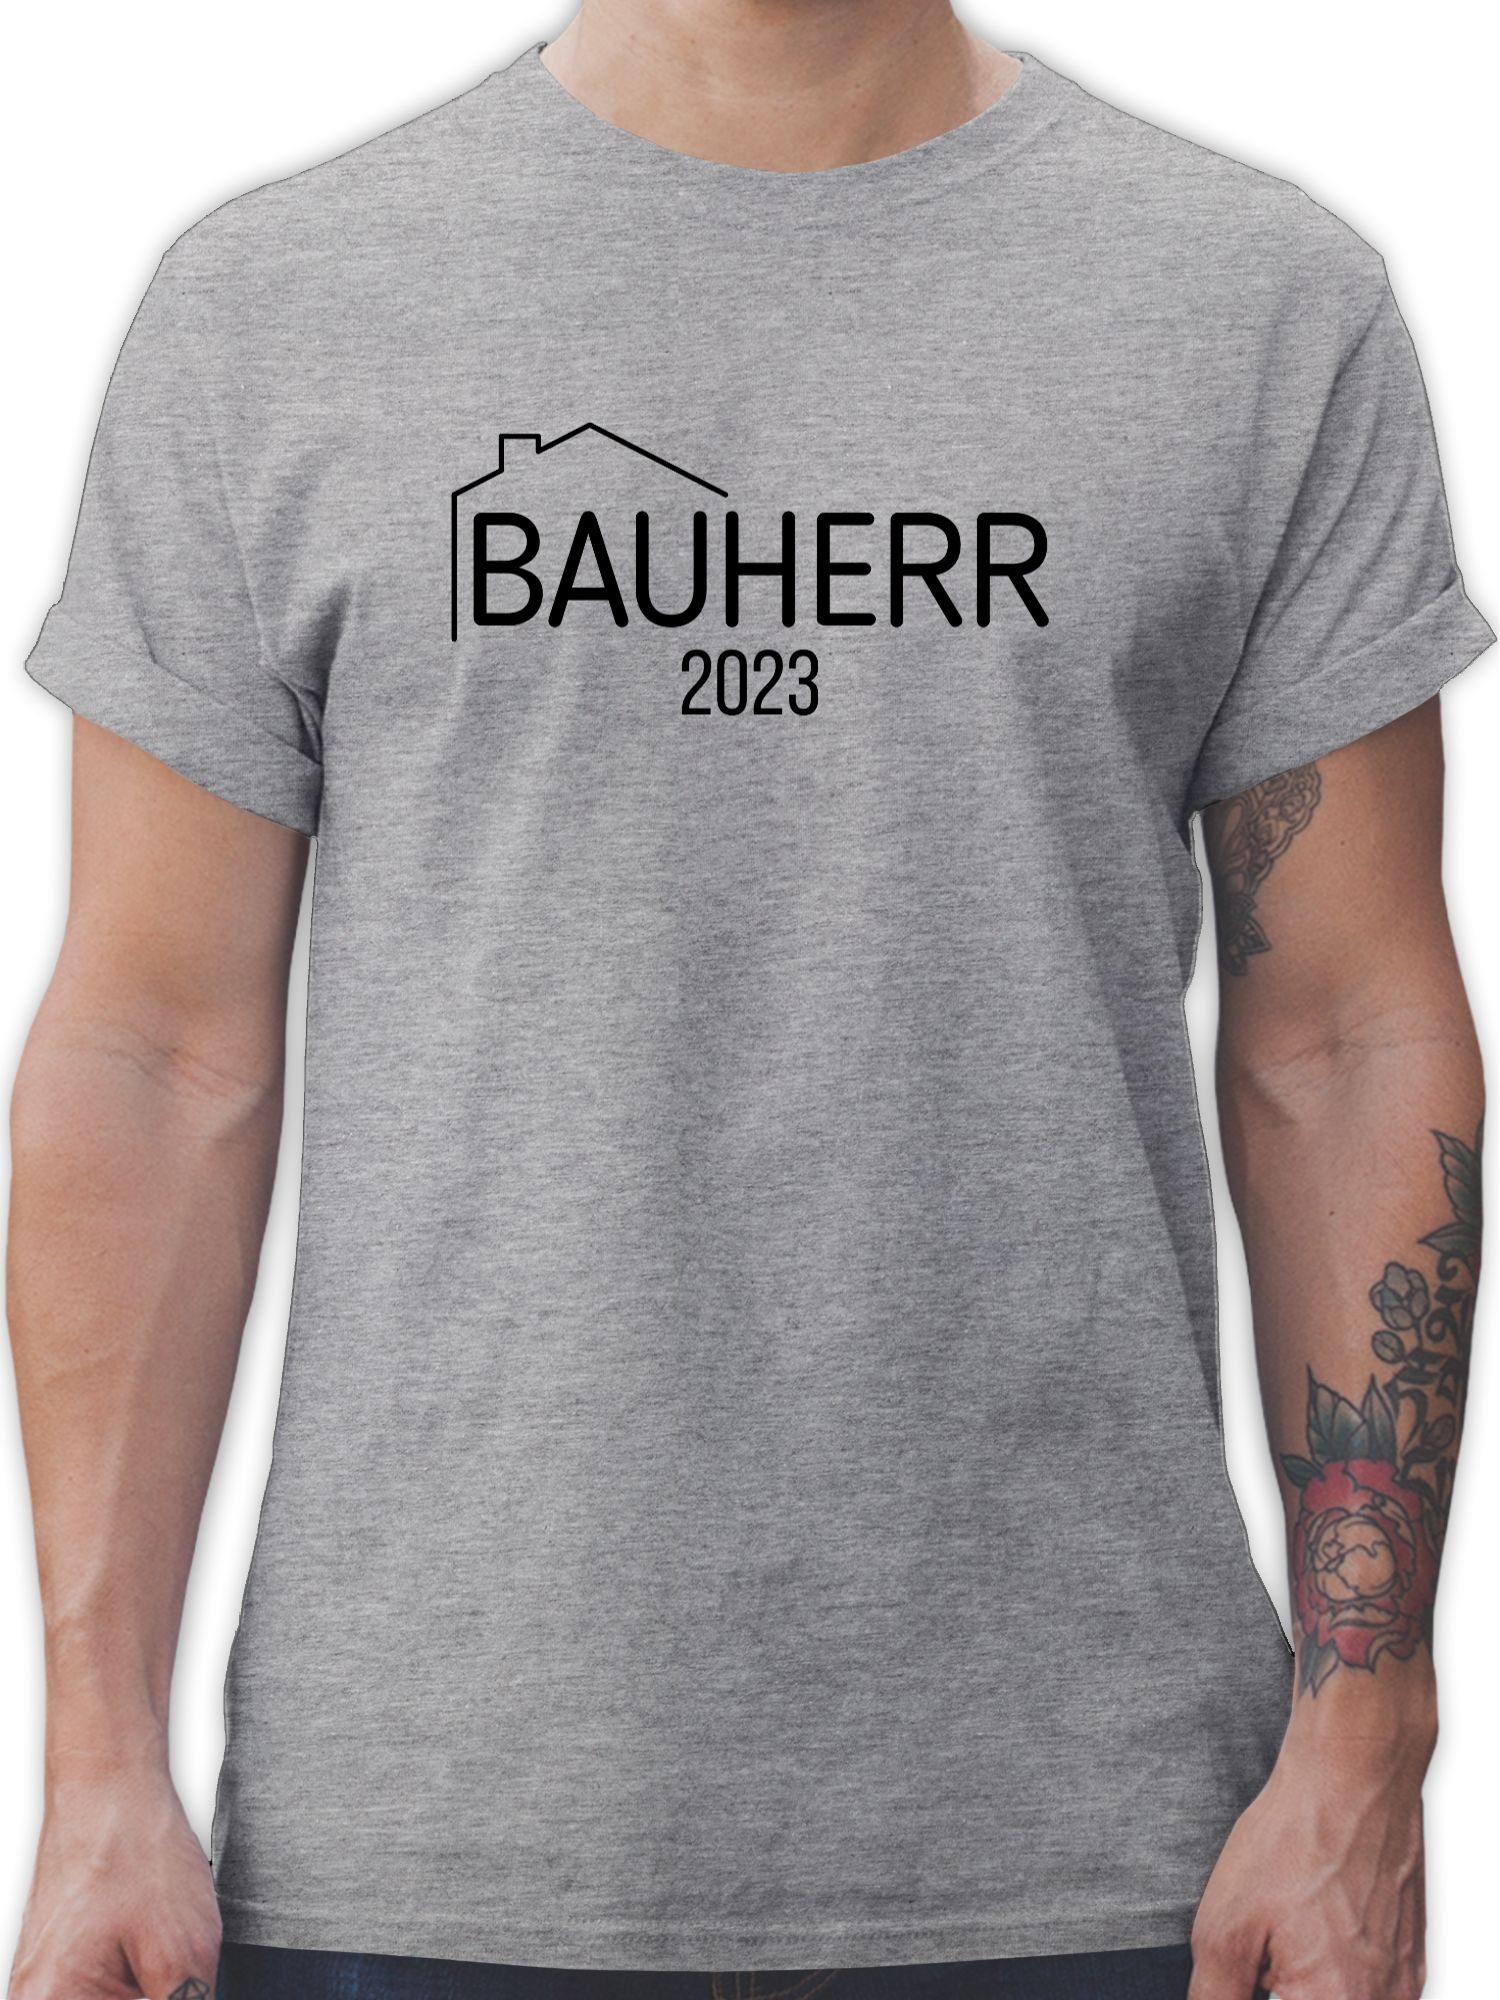 Shirtracer T-Shirt Bauherr 2023 Herren & Männer Geschenke 3 Grau meliert